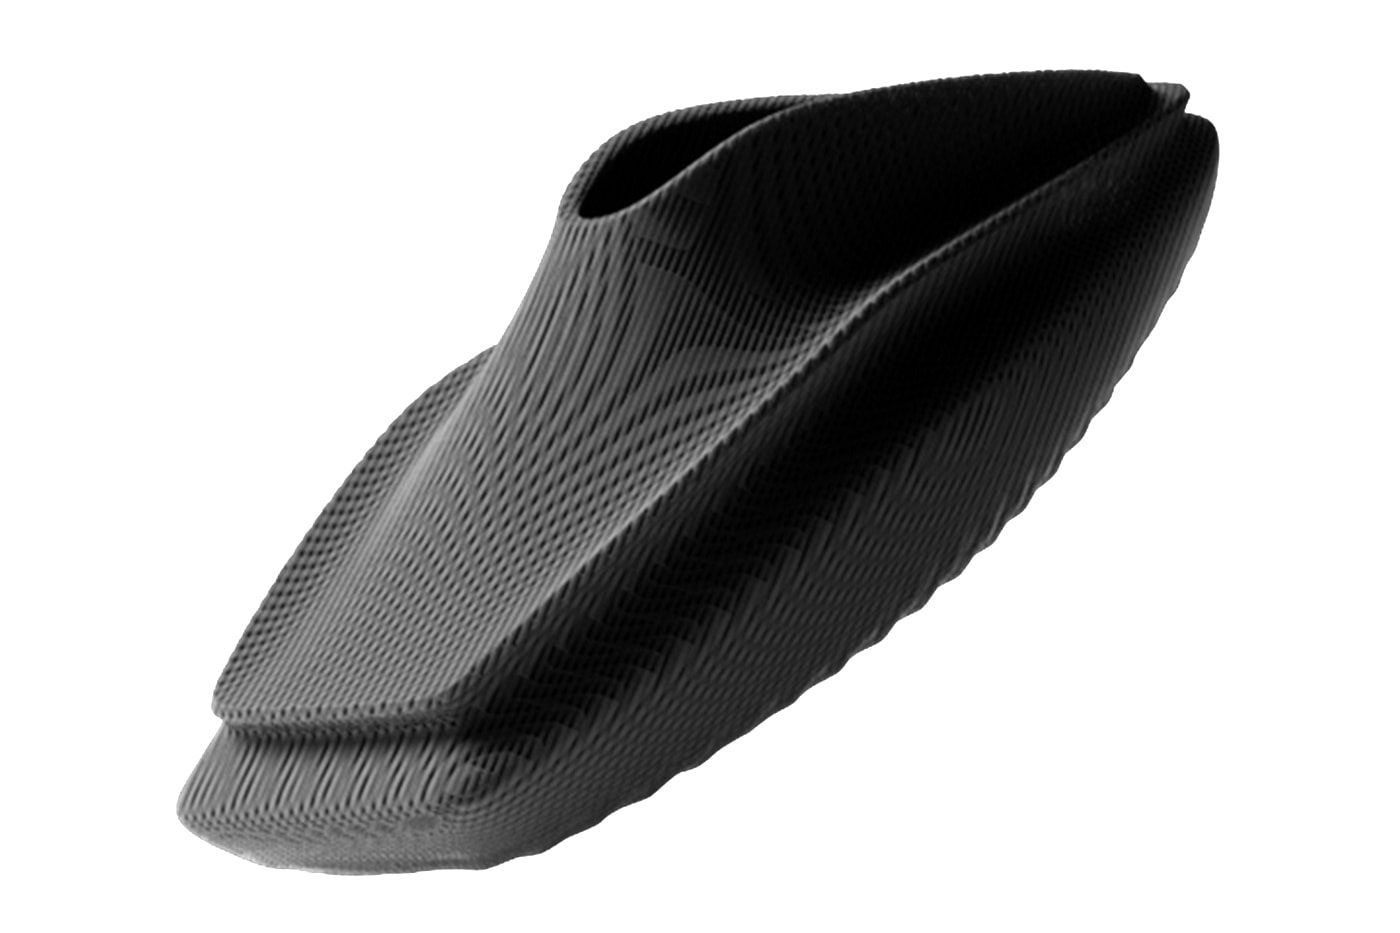 Информация о запуске открытой бета-платформы Zellerfeld для 3D-печатной обуви 